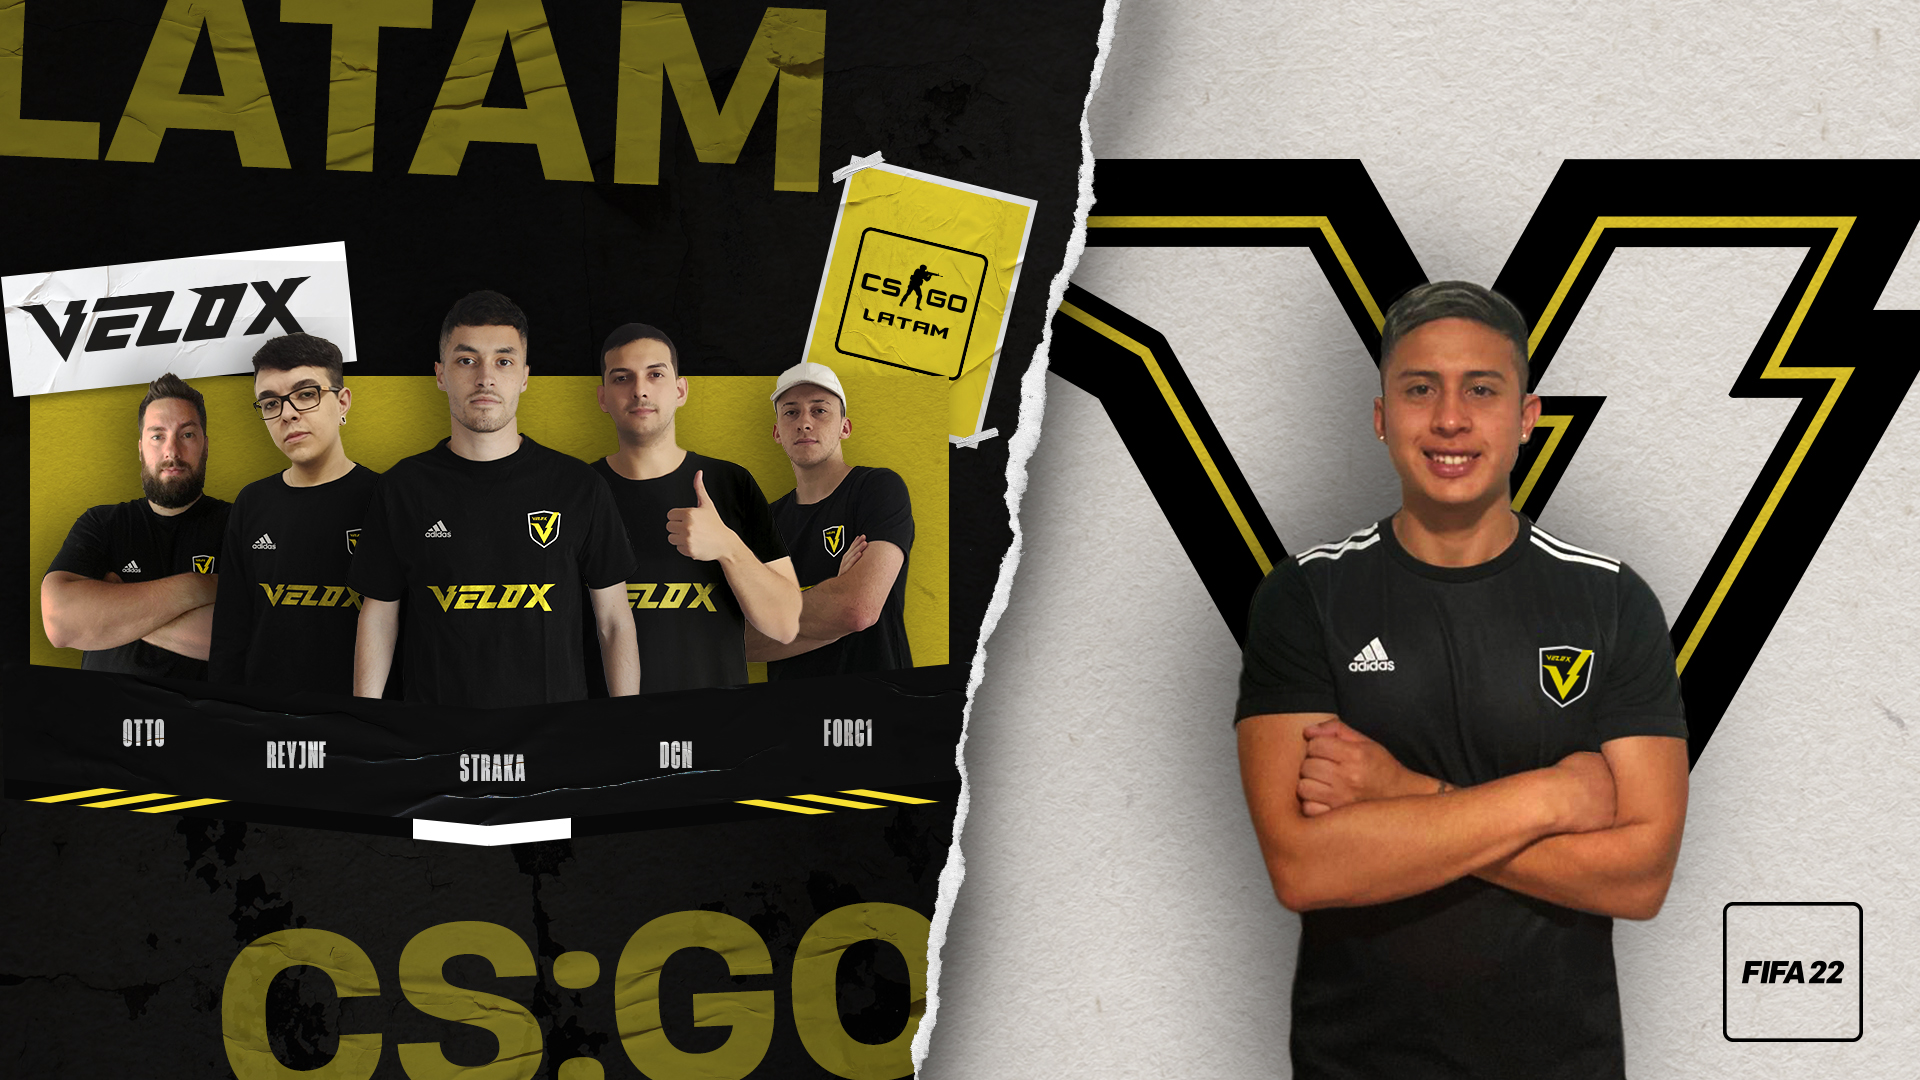 Generacion Bolos Lada Velox, el equipo de esports del futbolista Emiliano Rigoni, desembarca de  lleno en CS:GO y FIFA - Cultura Geek